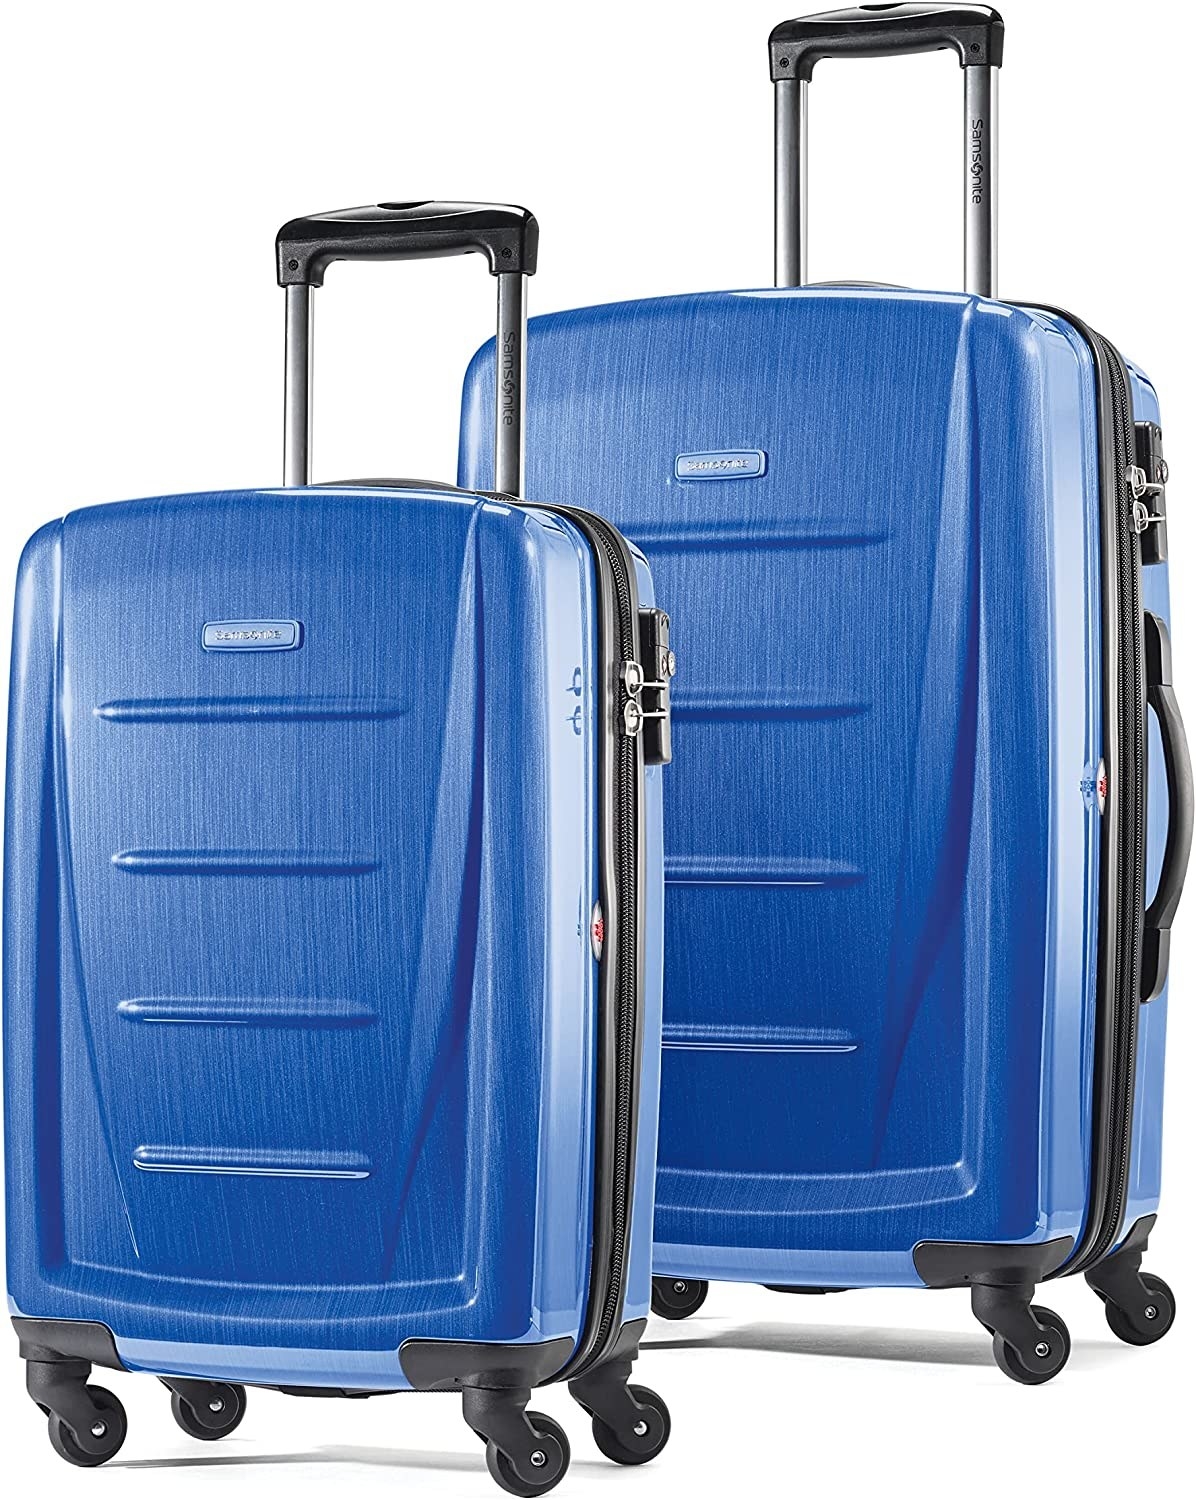 two blue samsonite suitcases